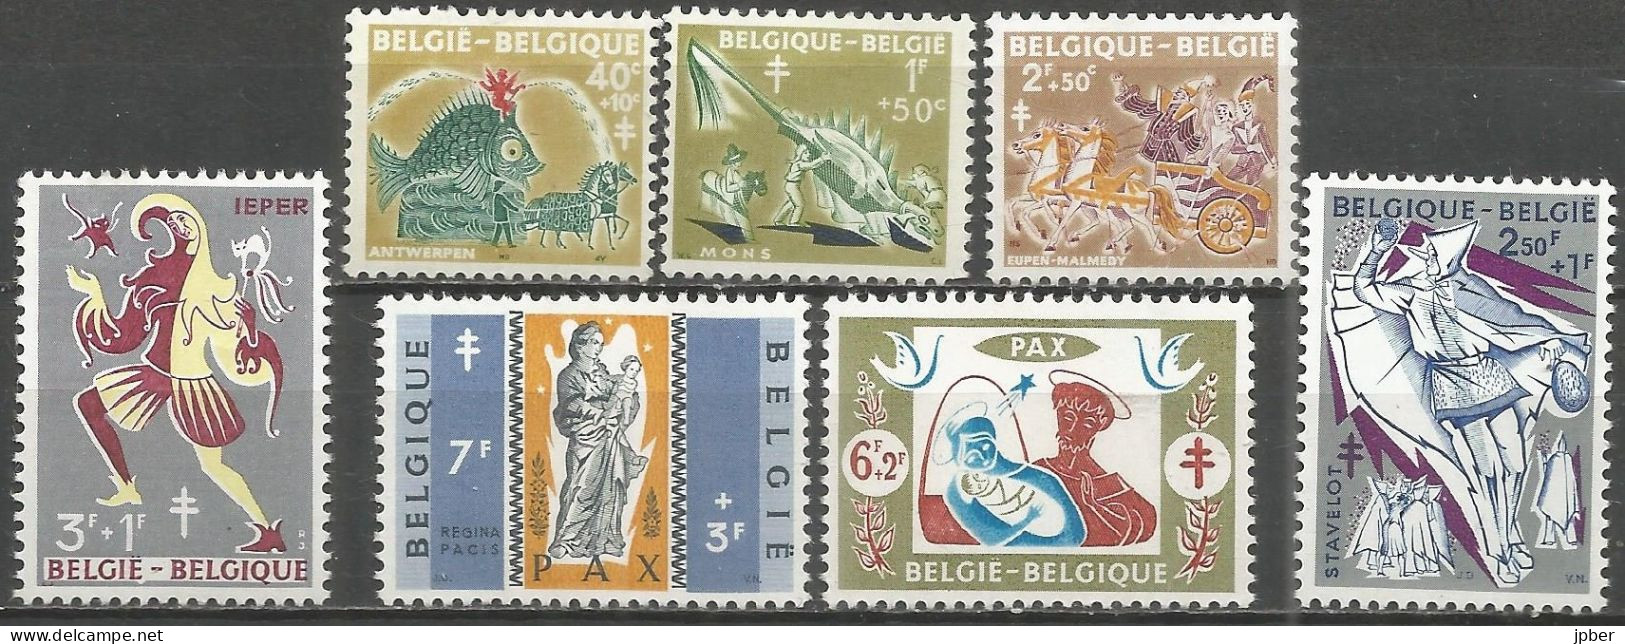 Belgique - Folklore - Anvers, Mons, Eupen, Stavelot, Ypres - N°1114 à 1120 */** - Ongebruikt